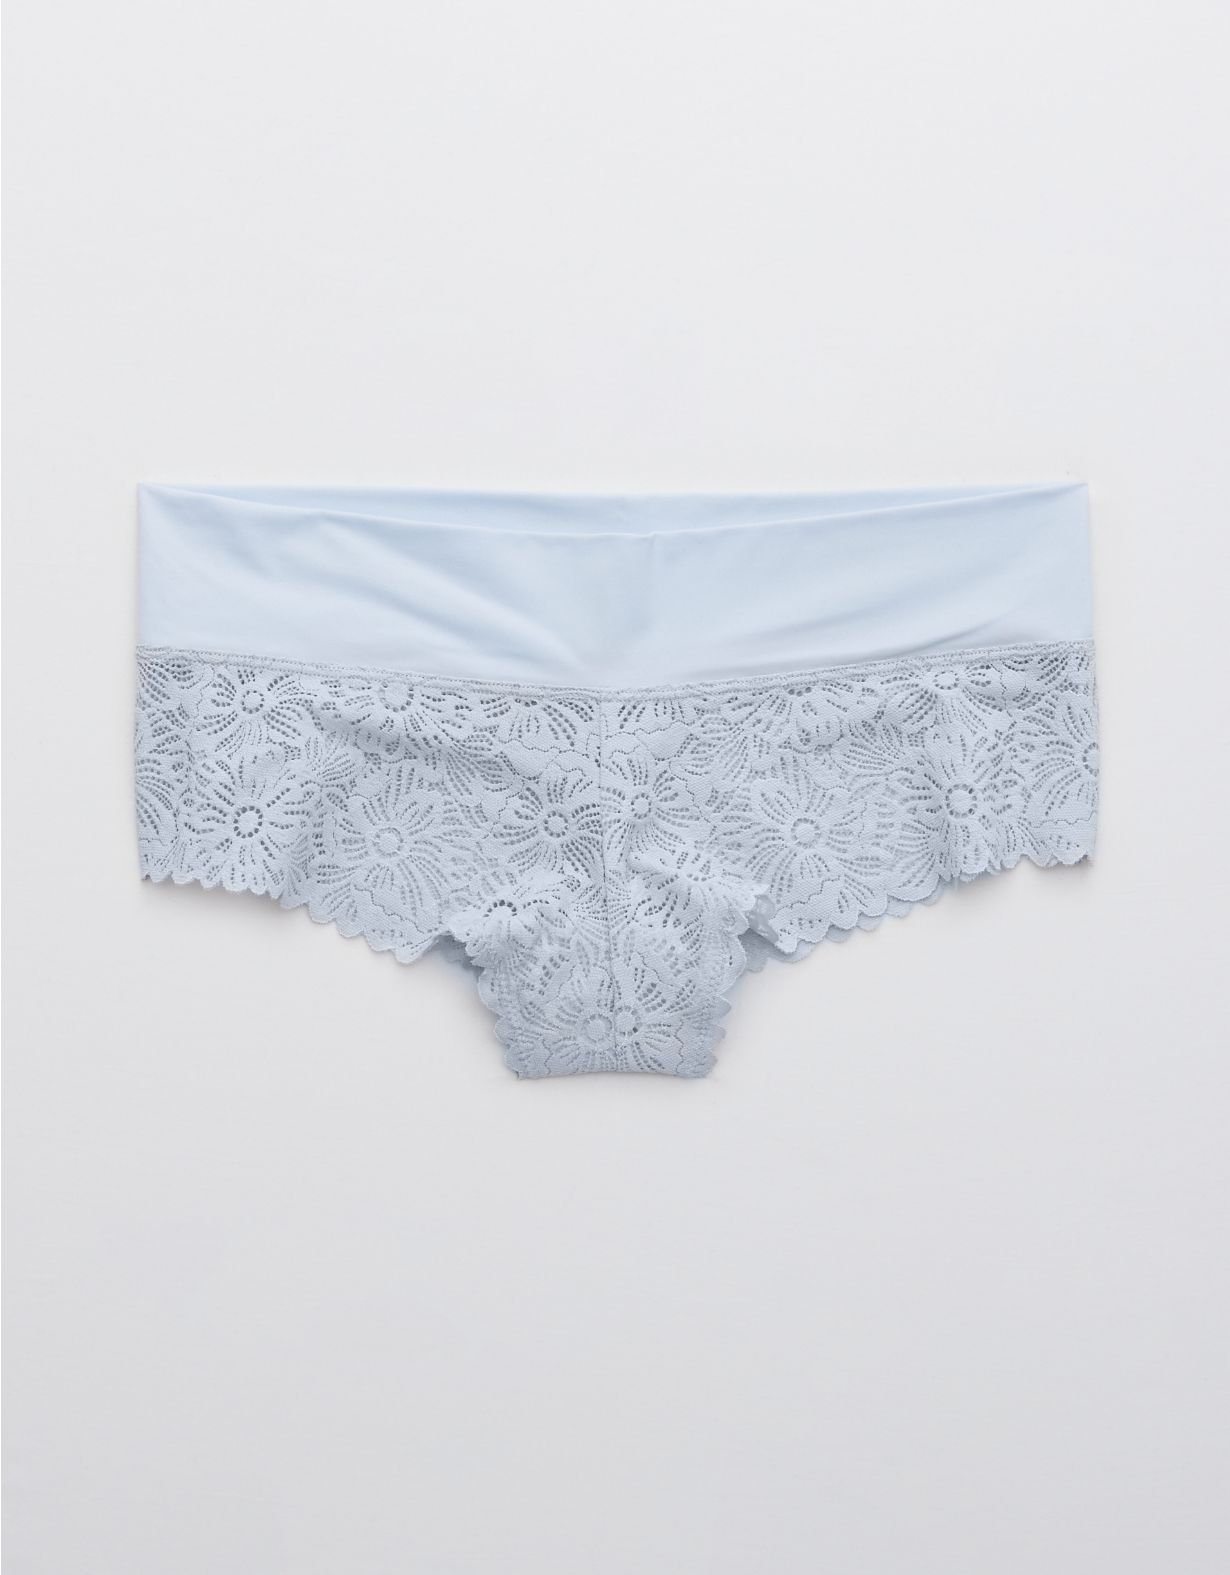 Aerie Sunnie Blossom Lace Cheeky Underwear